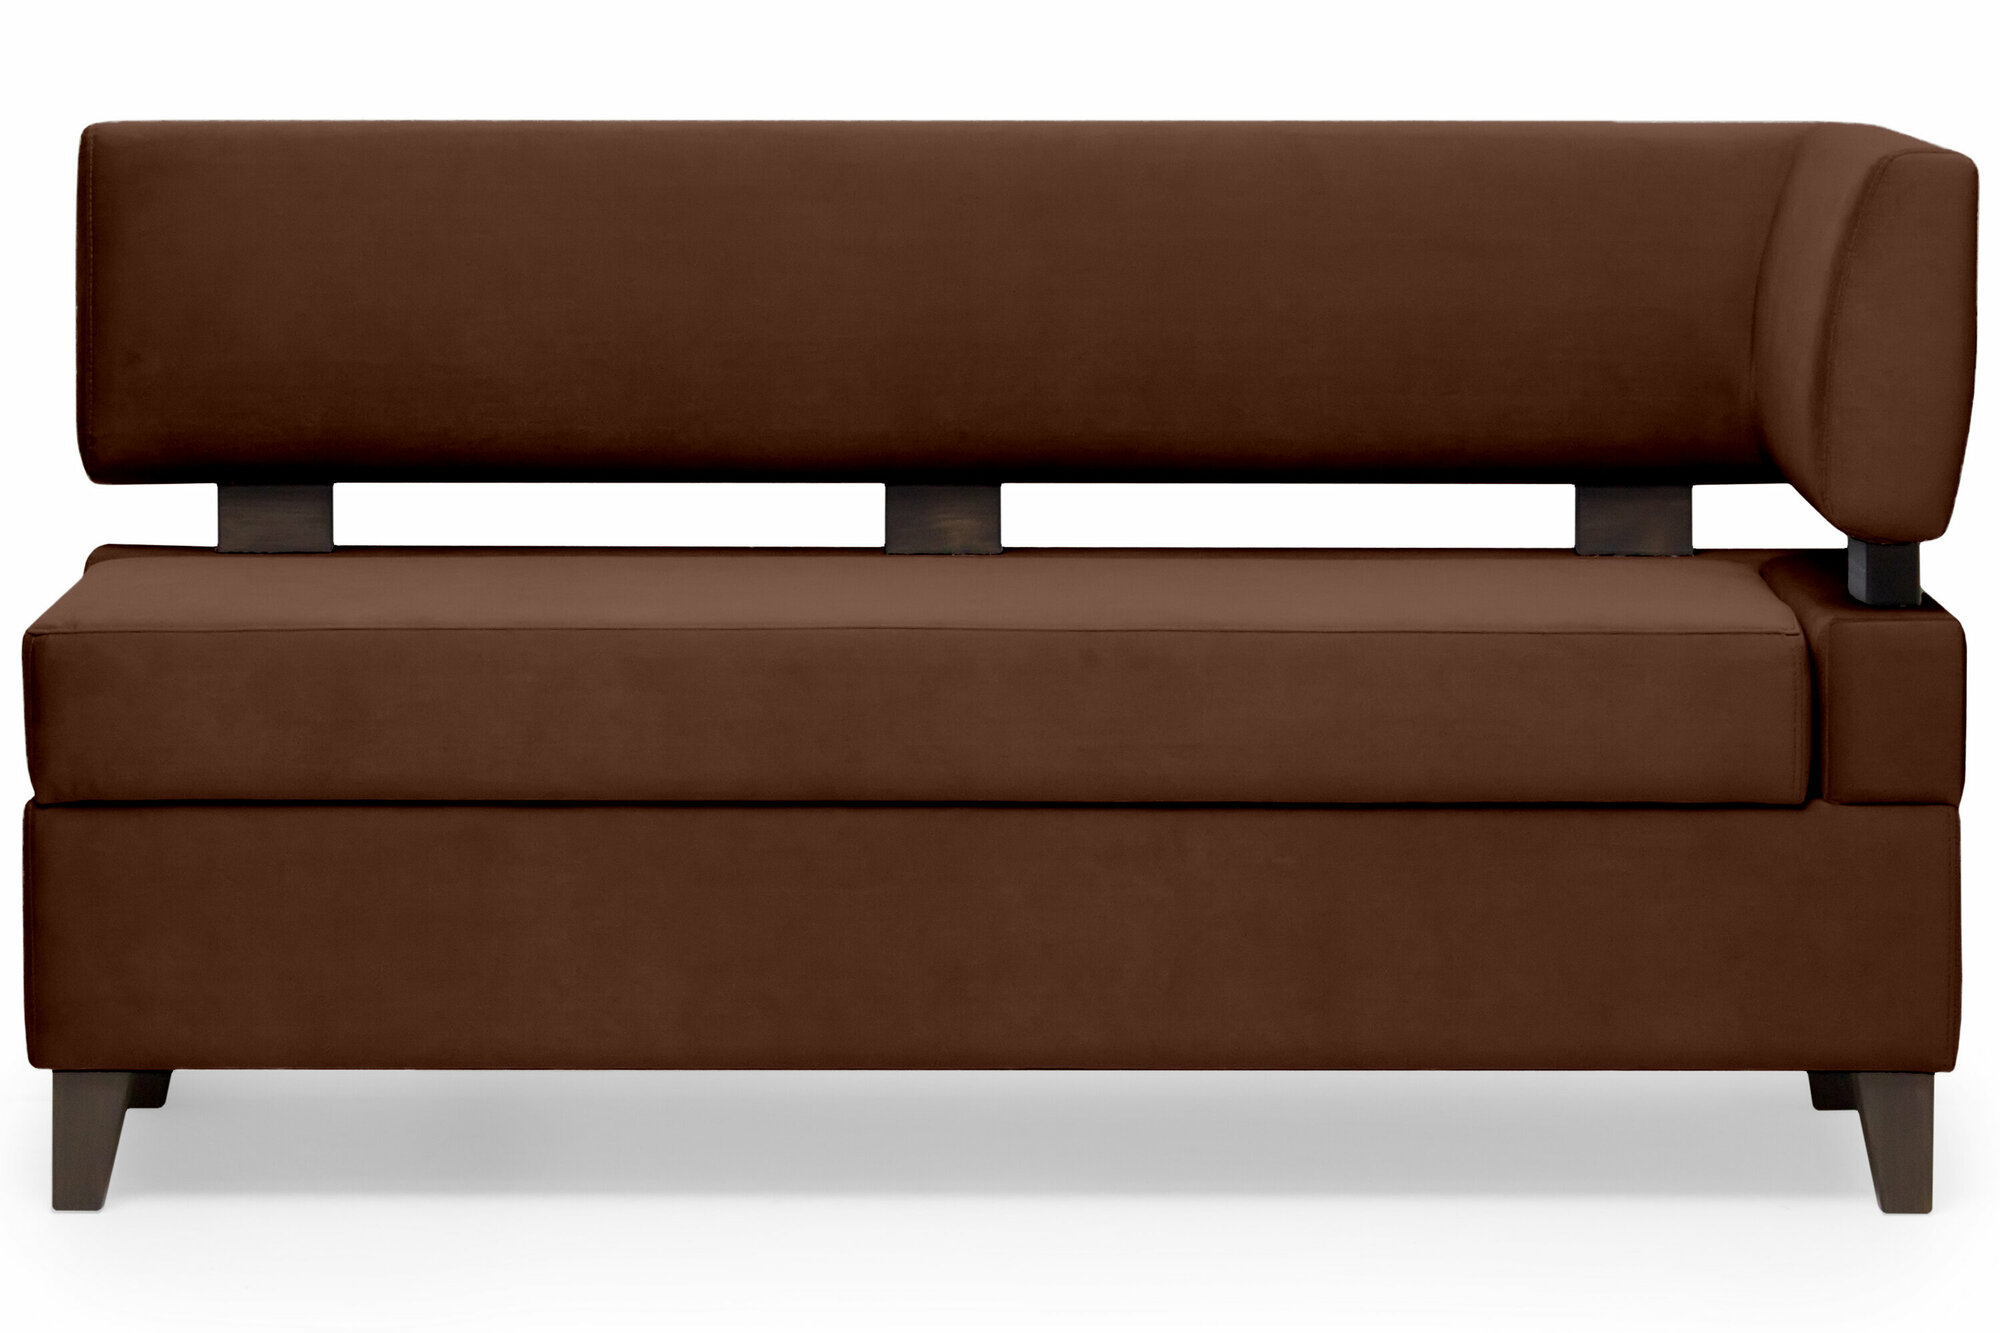 Прямой диван для кухни Свен 175 см с боковой спинкой и ящиком - коричневый, правый